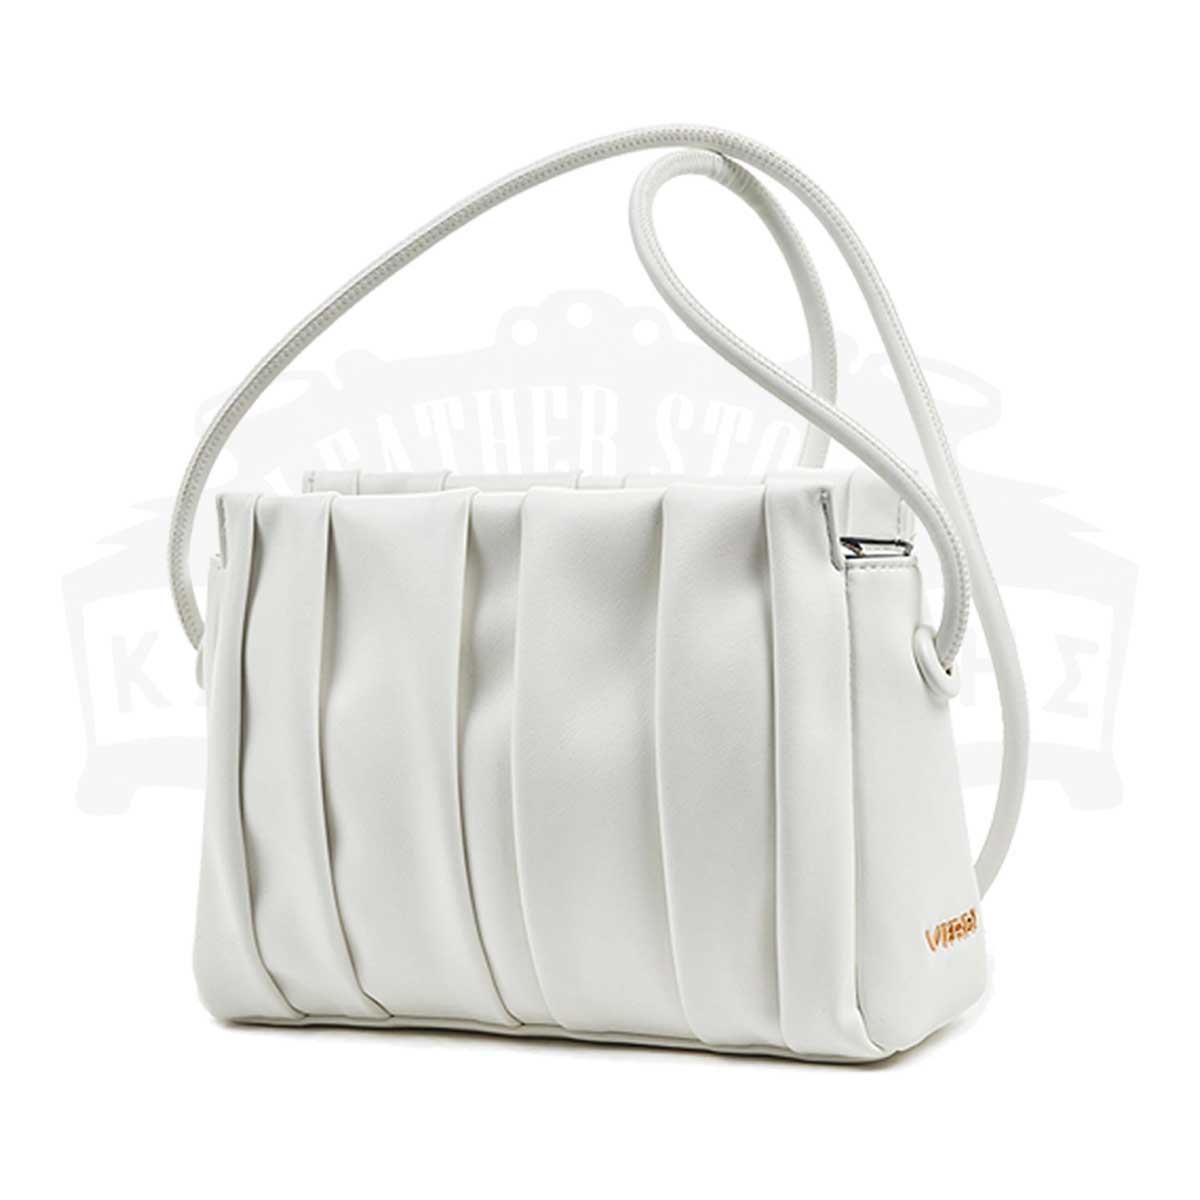 Women's Crossbody Bag in White color 16-6291 - VERDE